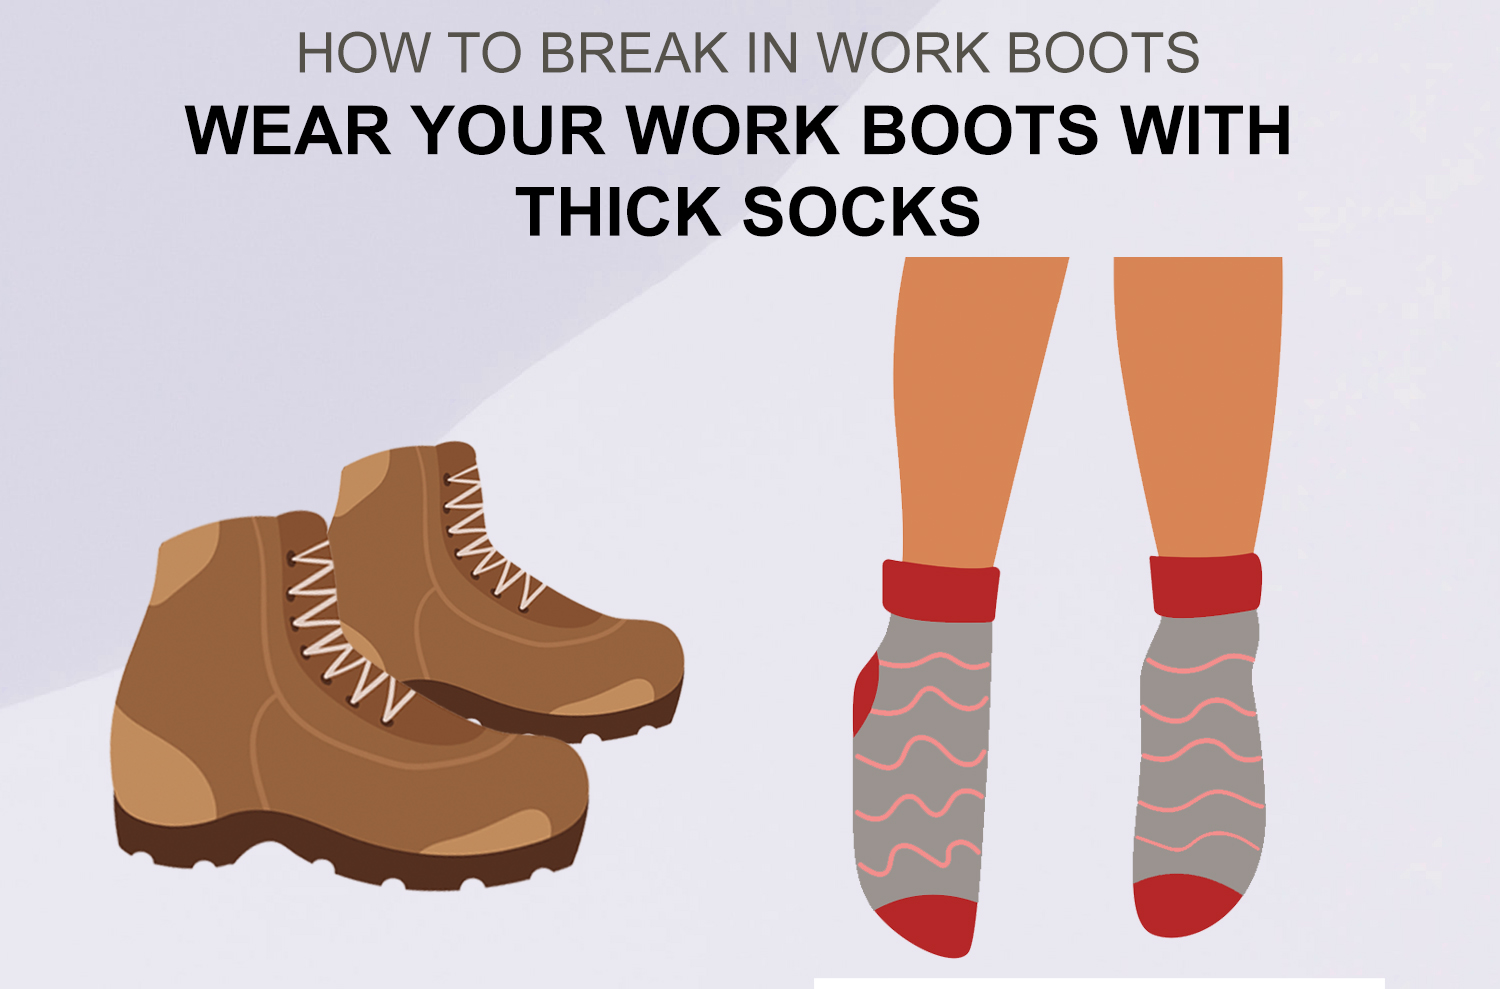 How to Break in Work Boots